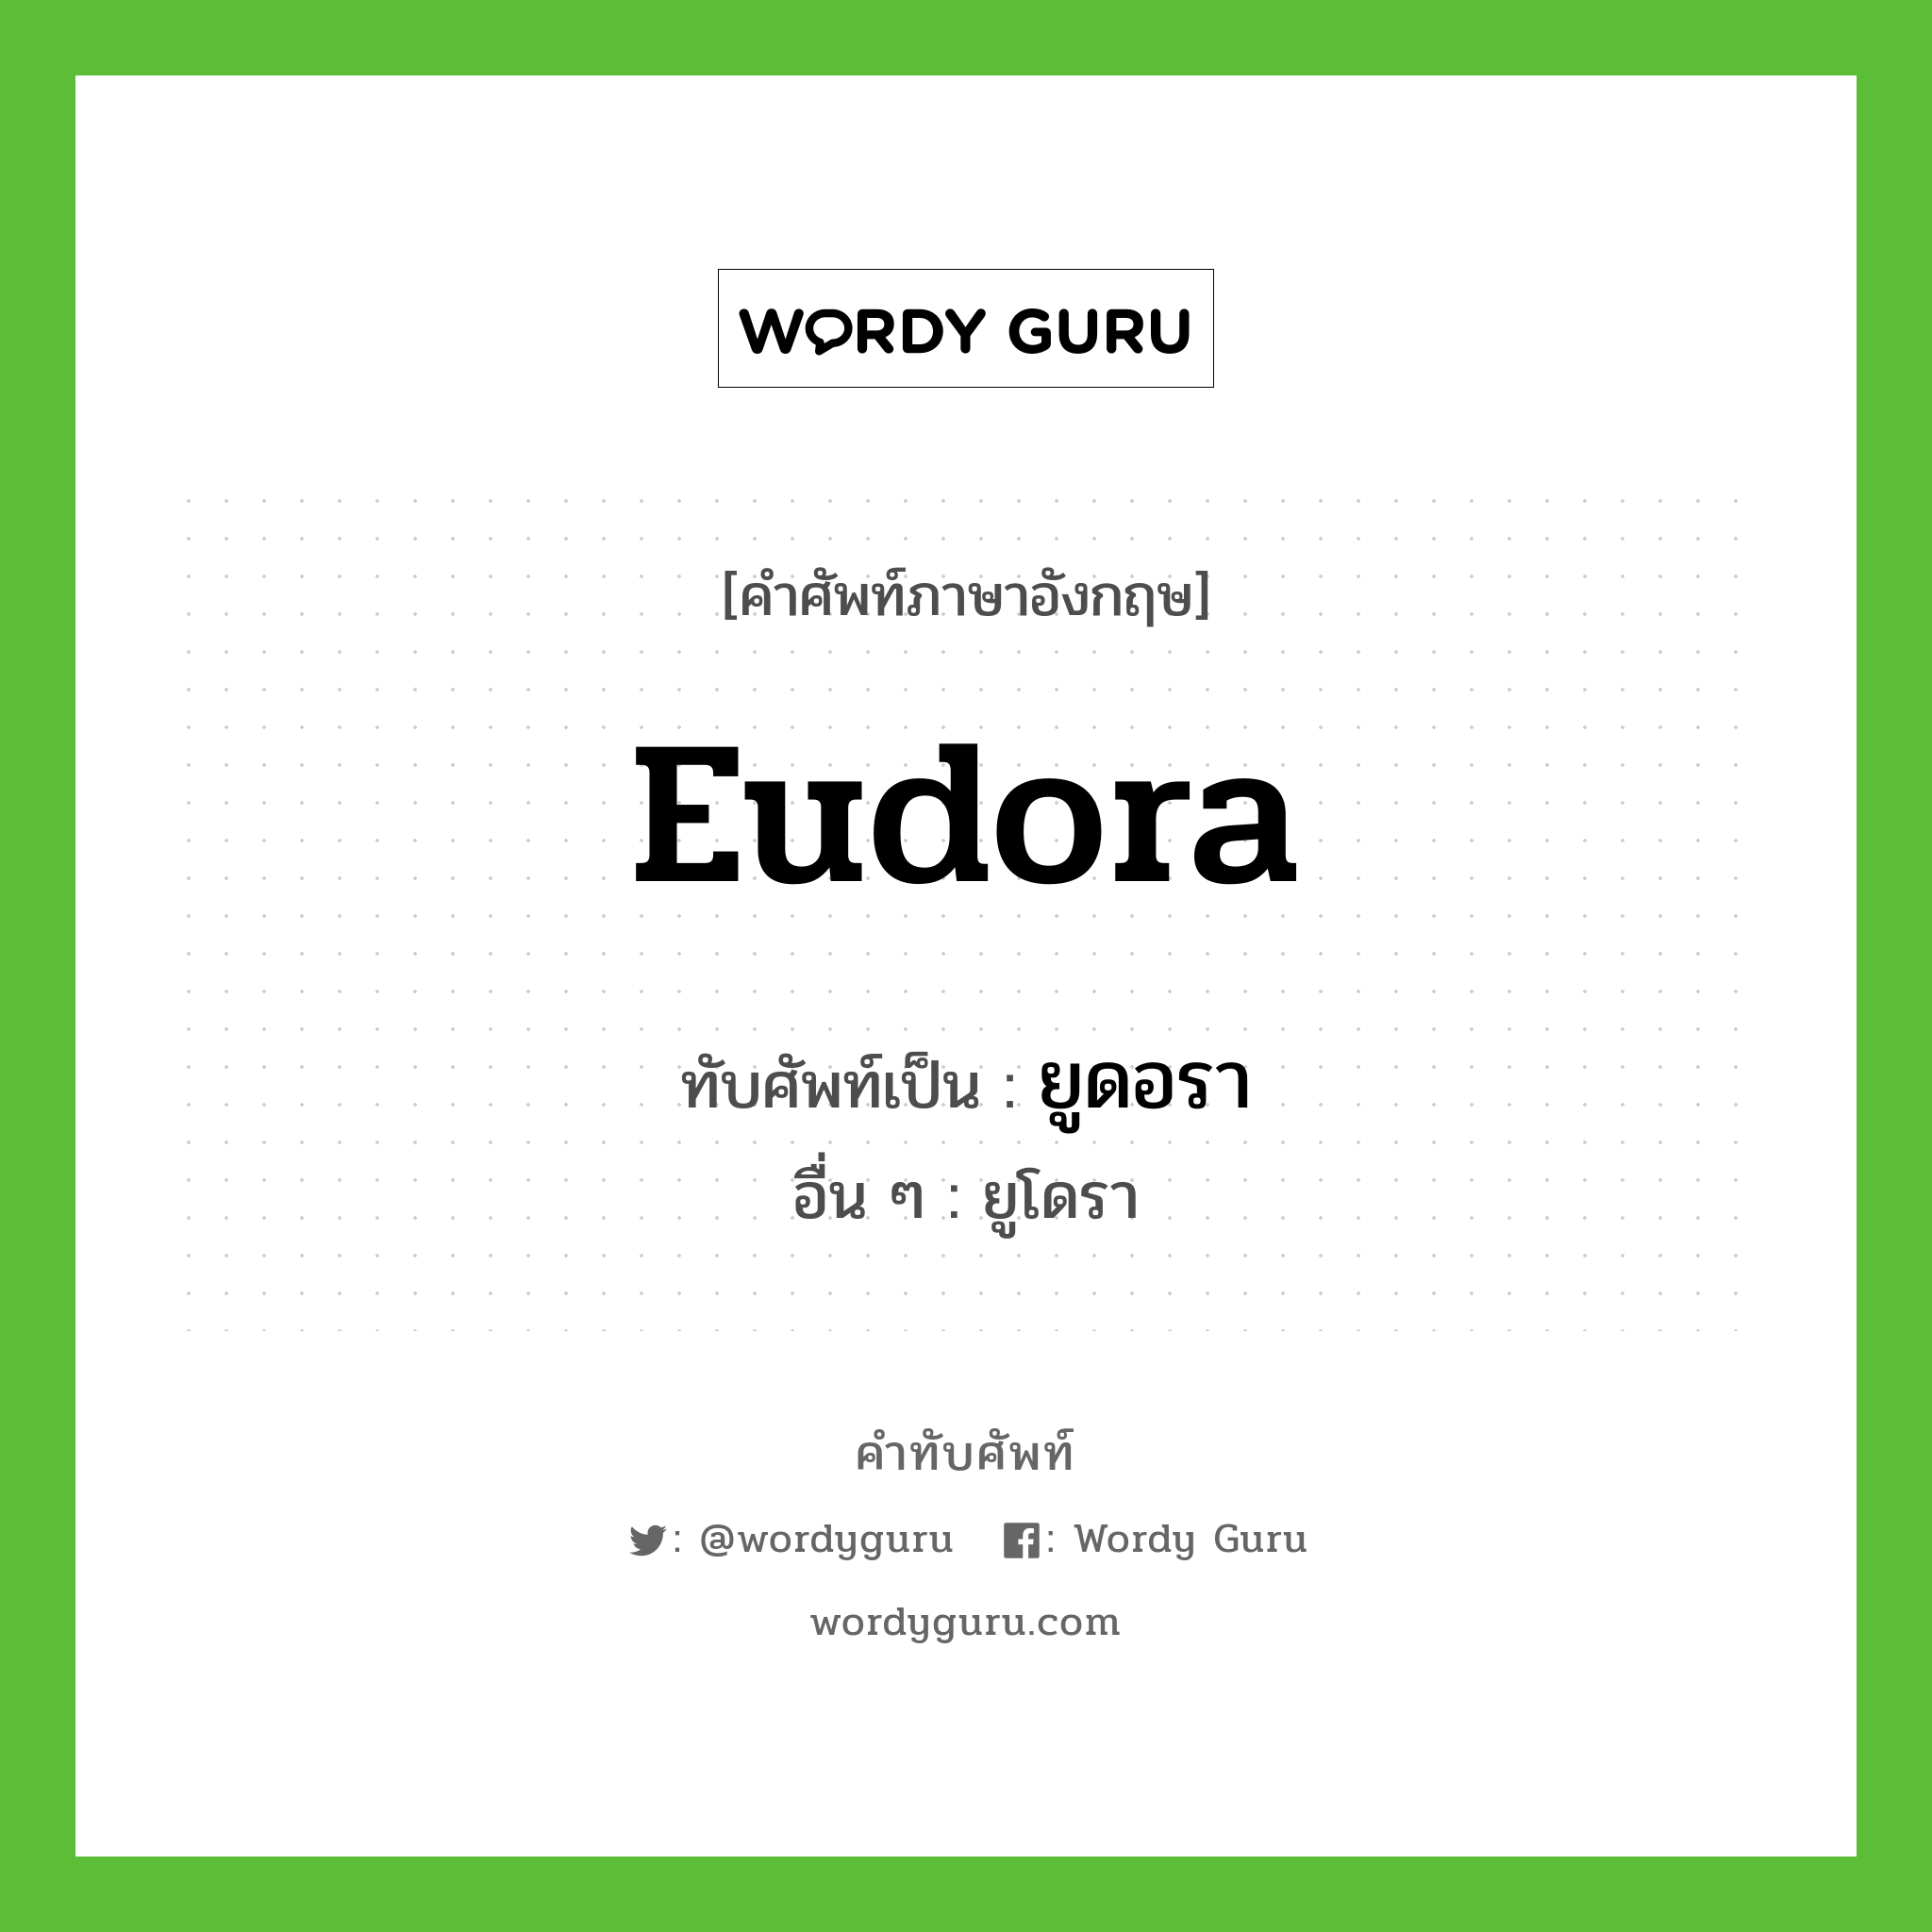 ยูดอรา เขียนอย่างไร?, คำศัพท์ภาษาอังกฤษ ยูดอรา ทับศัพท์เป็น Eudora อื่น ๆ ยูโดรา